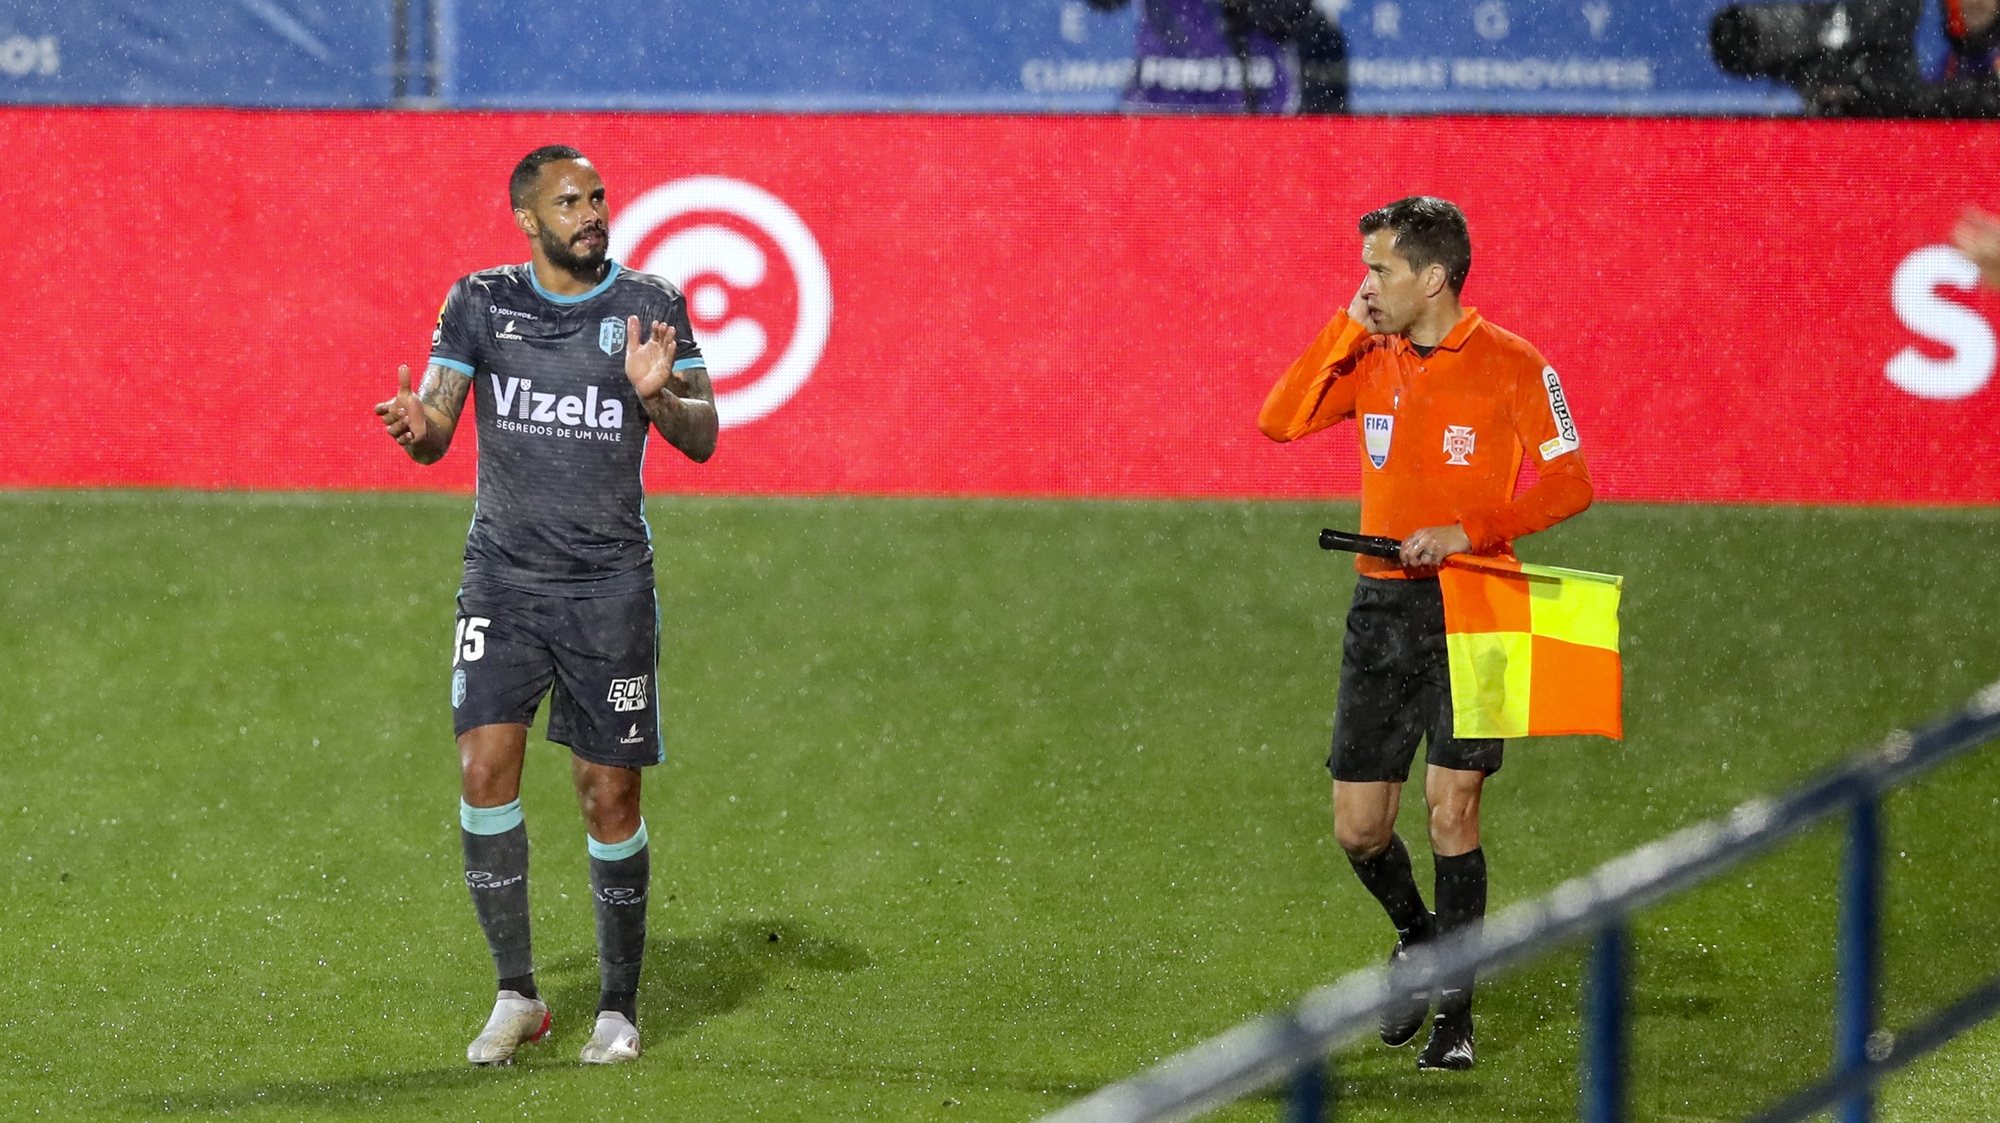 O jogador Vizela, Schettine, festeja após marcar um golo contra o Arouca durante o jogo da Primeira Liga de Futebol, em Vizela, 22 de abril de 2022. JOSÉ COELHO/LUSA